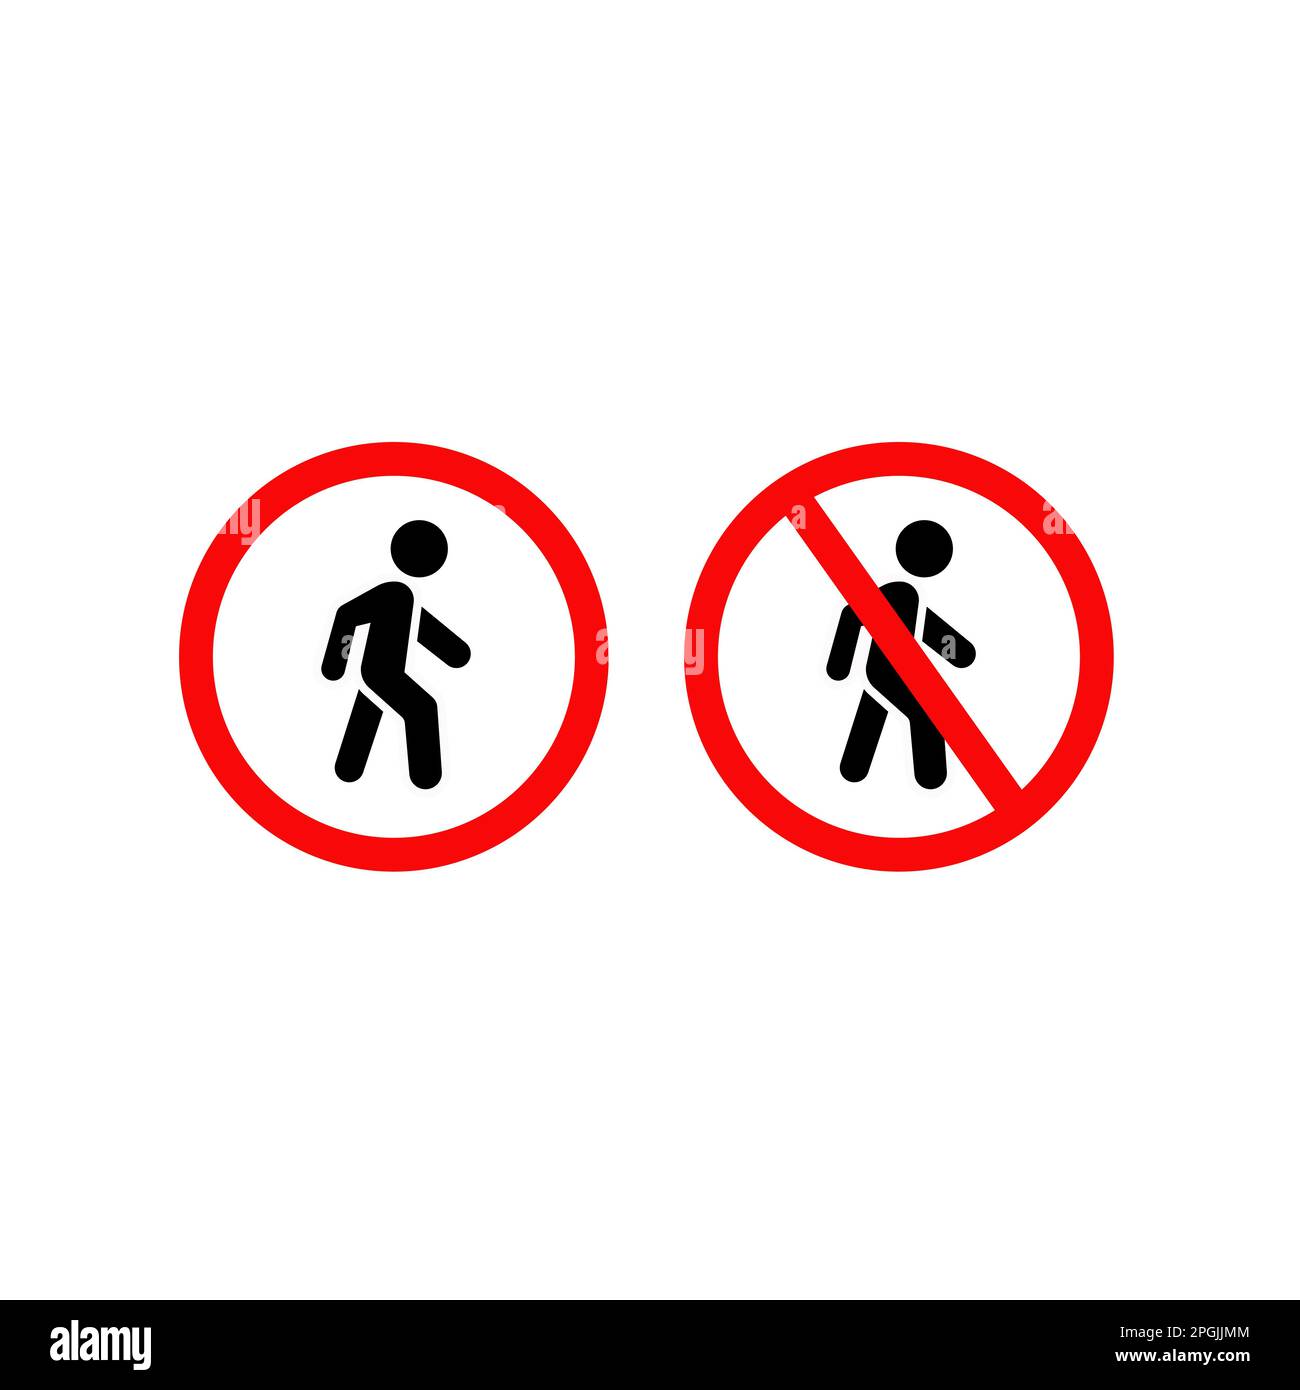 No walk icon access for pedestrians prohibition sign, vector illustration. No pedestrian sign Stock Vector